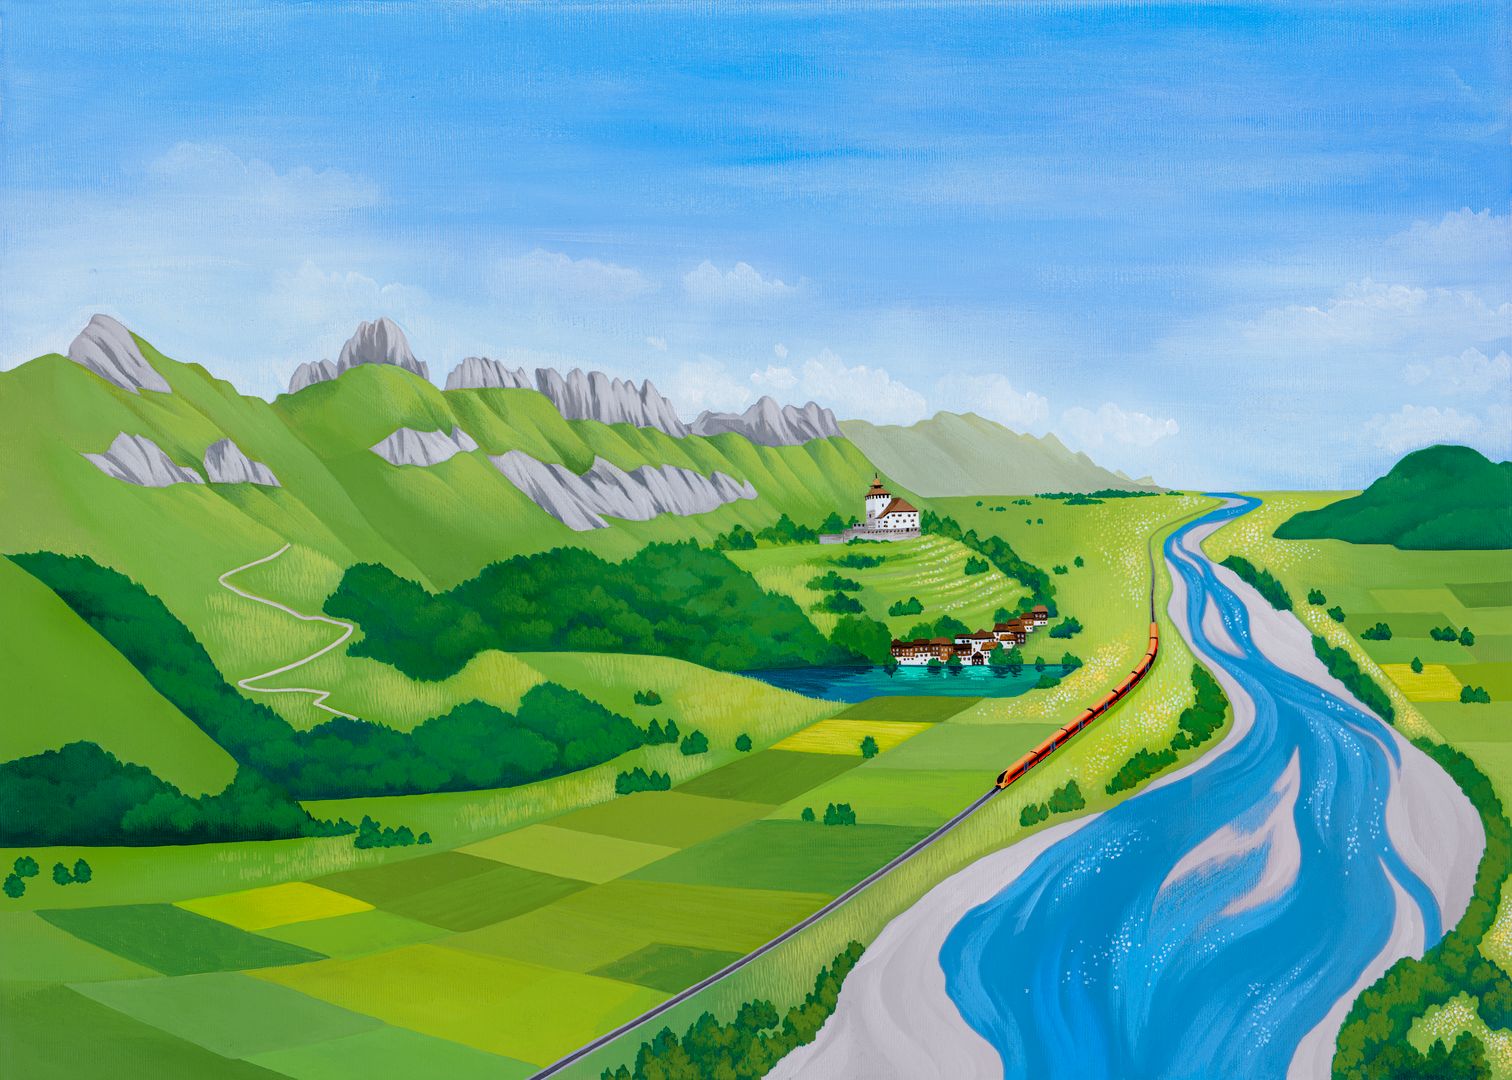 Gemalte Illustration eines grünen Tals, blauem Fluss und kupferfarbenen Zug der entlang fährt